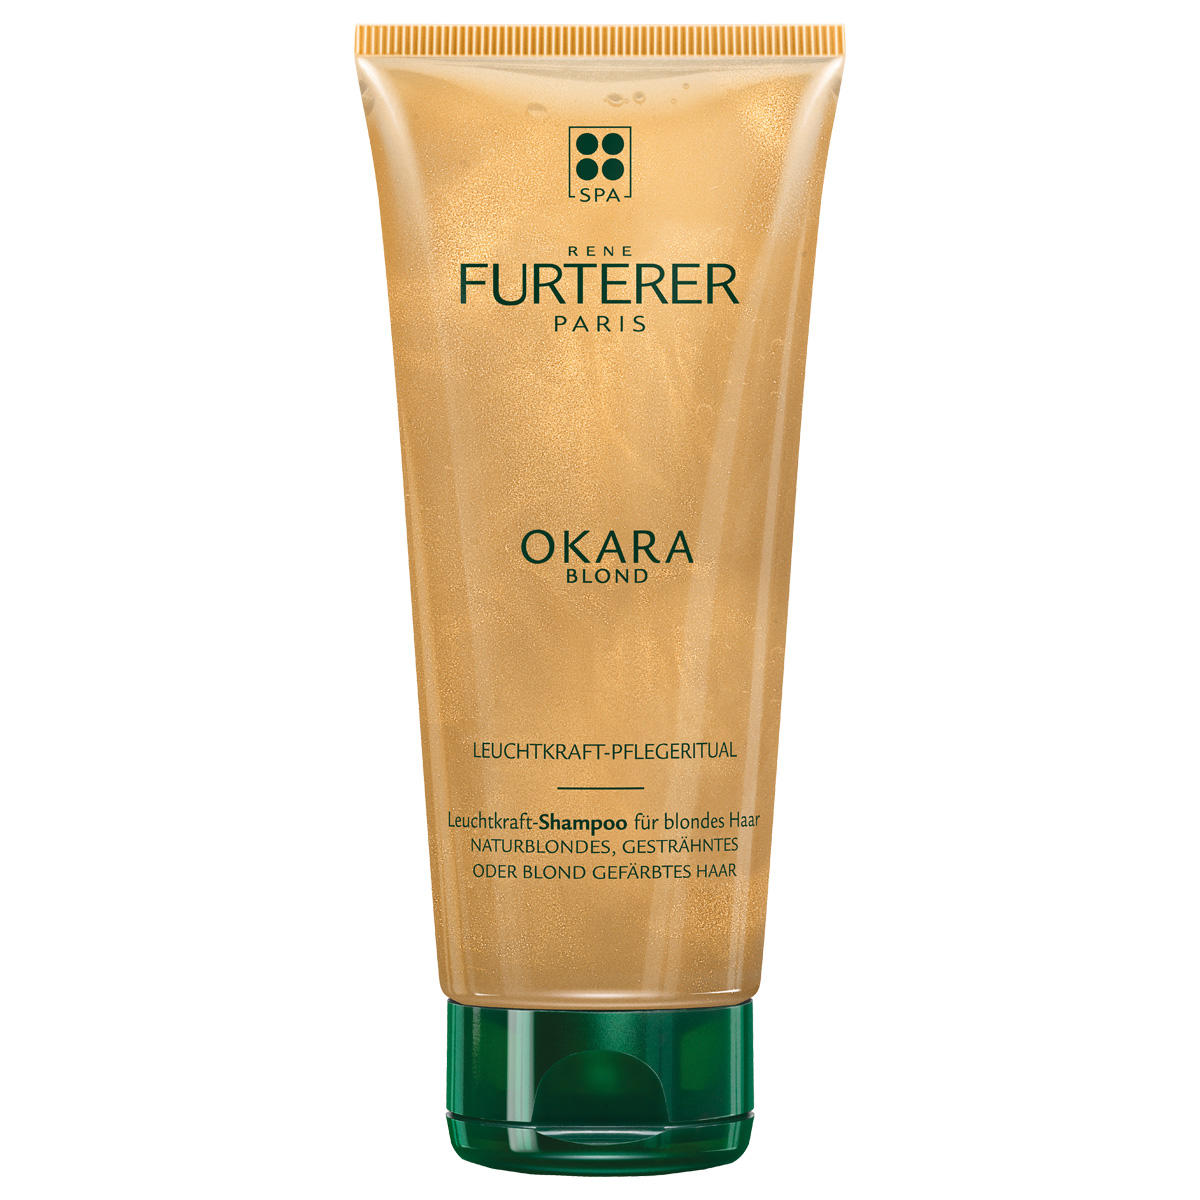 René Furterer Okara Blond Luminosity shampoo  - 1